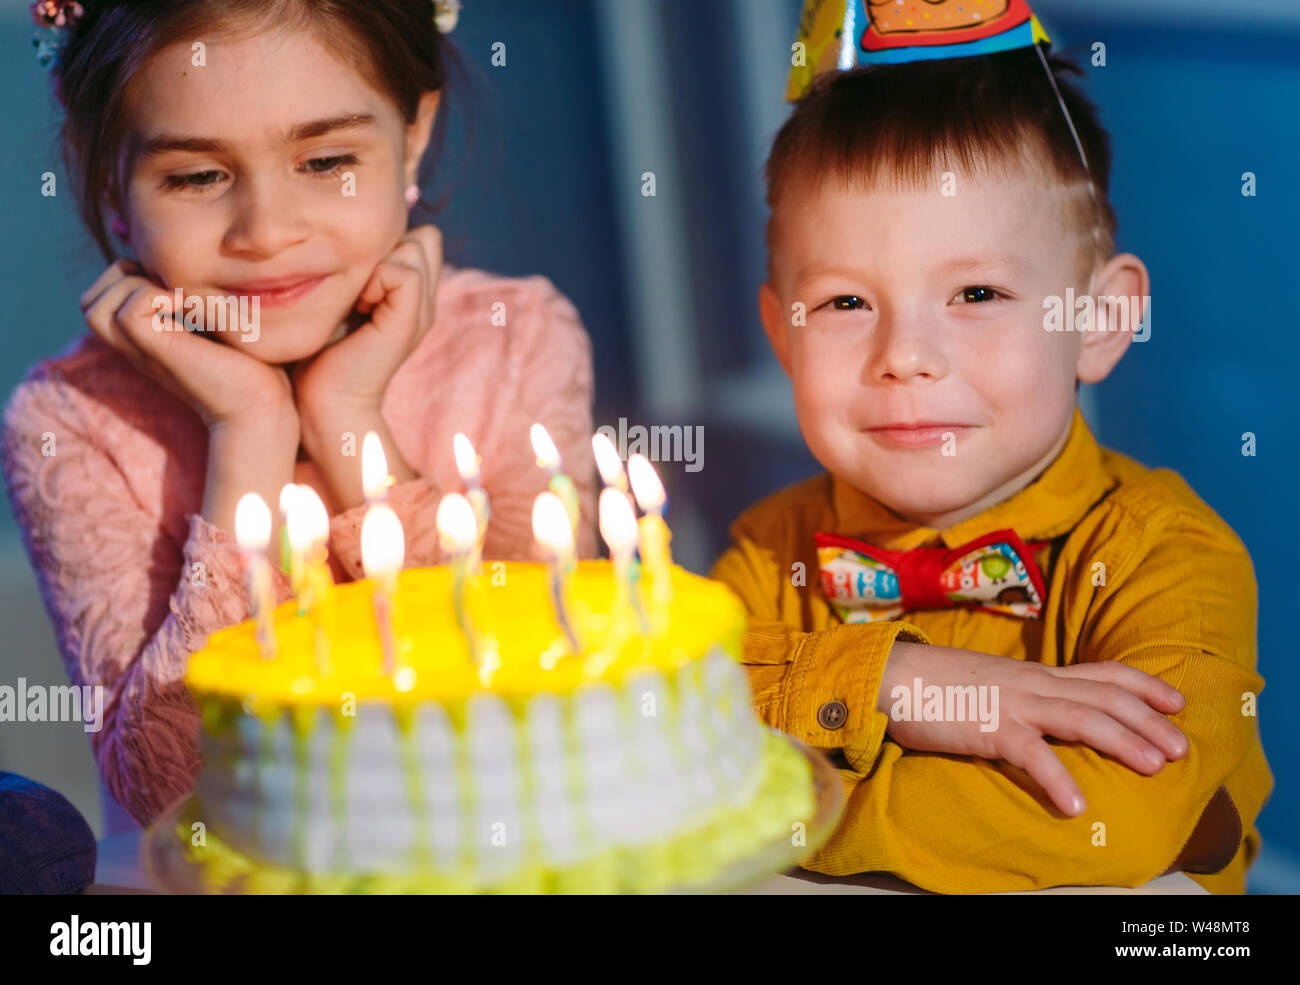 Niño, Niña, cuidado, torta de cumpleaños, tabla, mentira, celebrar el  soporte añadido, cumpleaños, infancia, 4-6 años, 4 años, platos, pasteles,  velas, velas de cumpleaños, fiesta, fiesta de cumpleaños, vacaciones, cumpleaños  infantil, solo